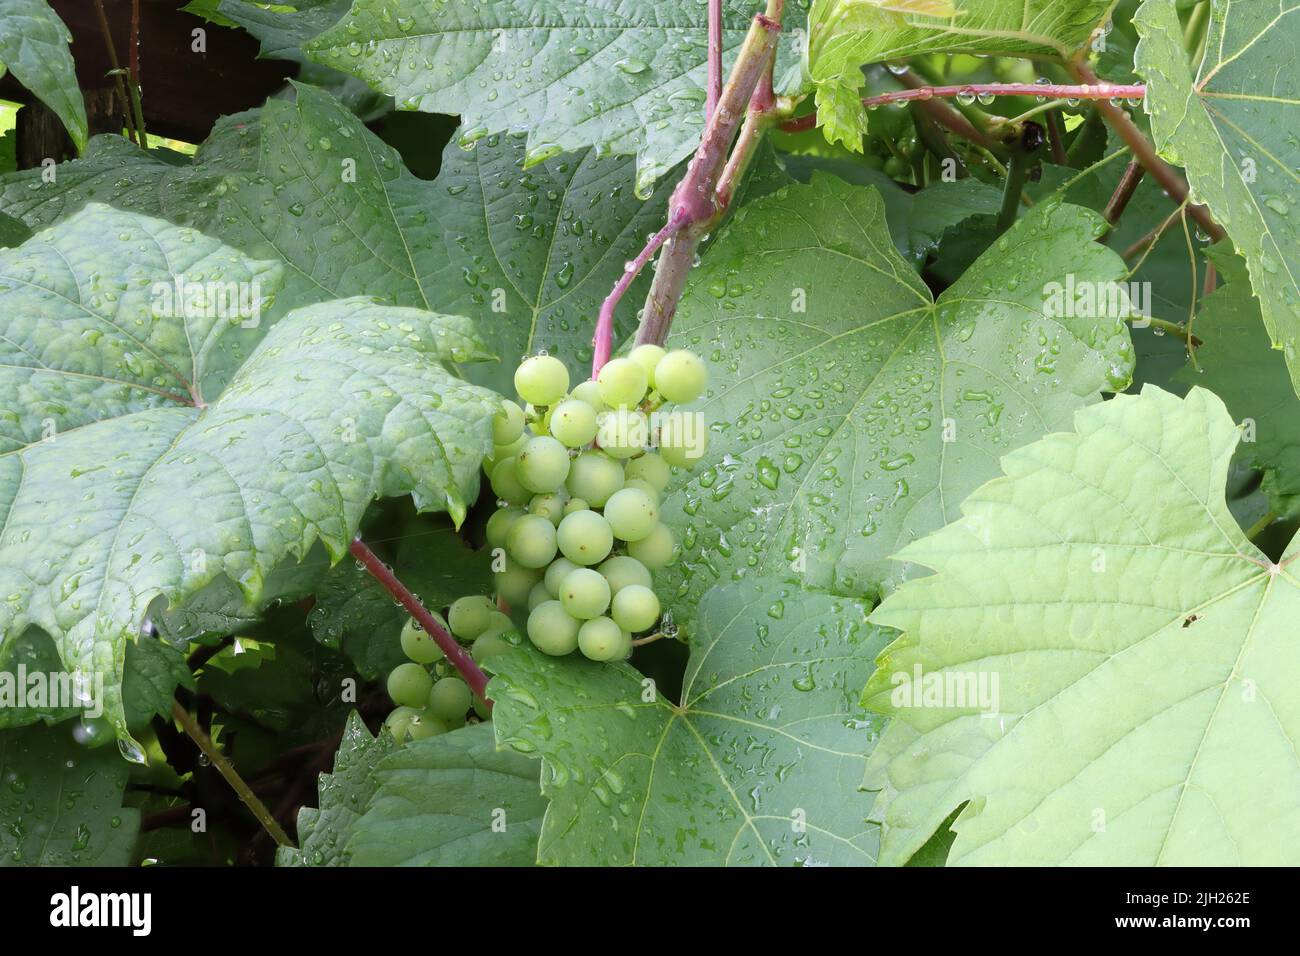 vitigno giovane, coltivato al lago di costanza, bodensee durante l'estate, verde e piccolo, ma fresco e jucy Foto Stock